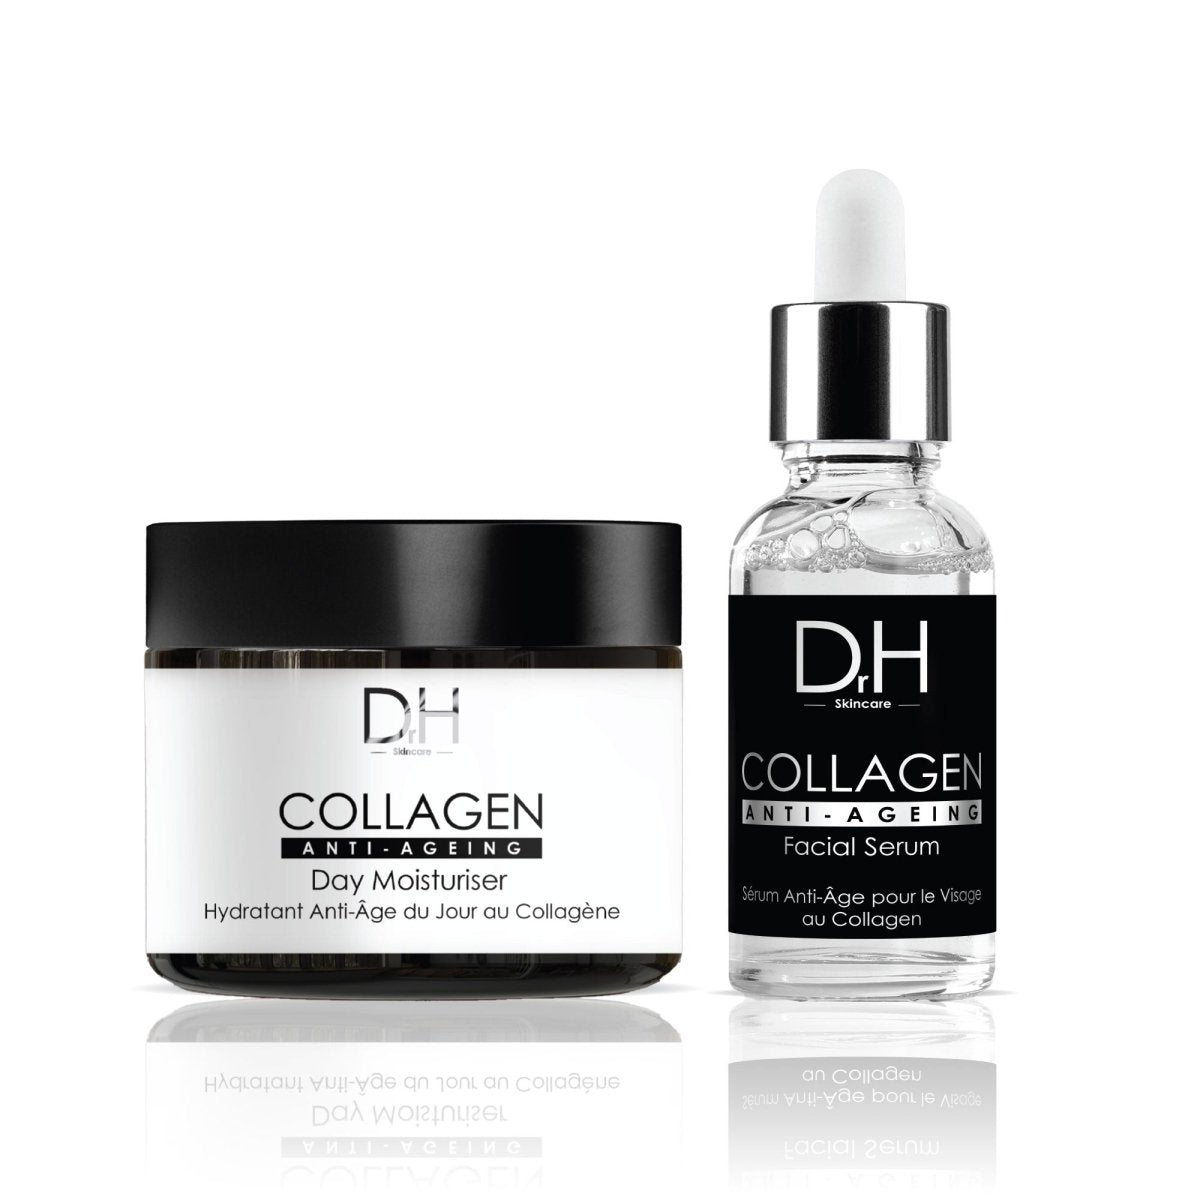 Anti - Aging Collagen Facial Serum 30ml + Collagen Anti - Ageing Day Moisturiser 60ml - skinChemists